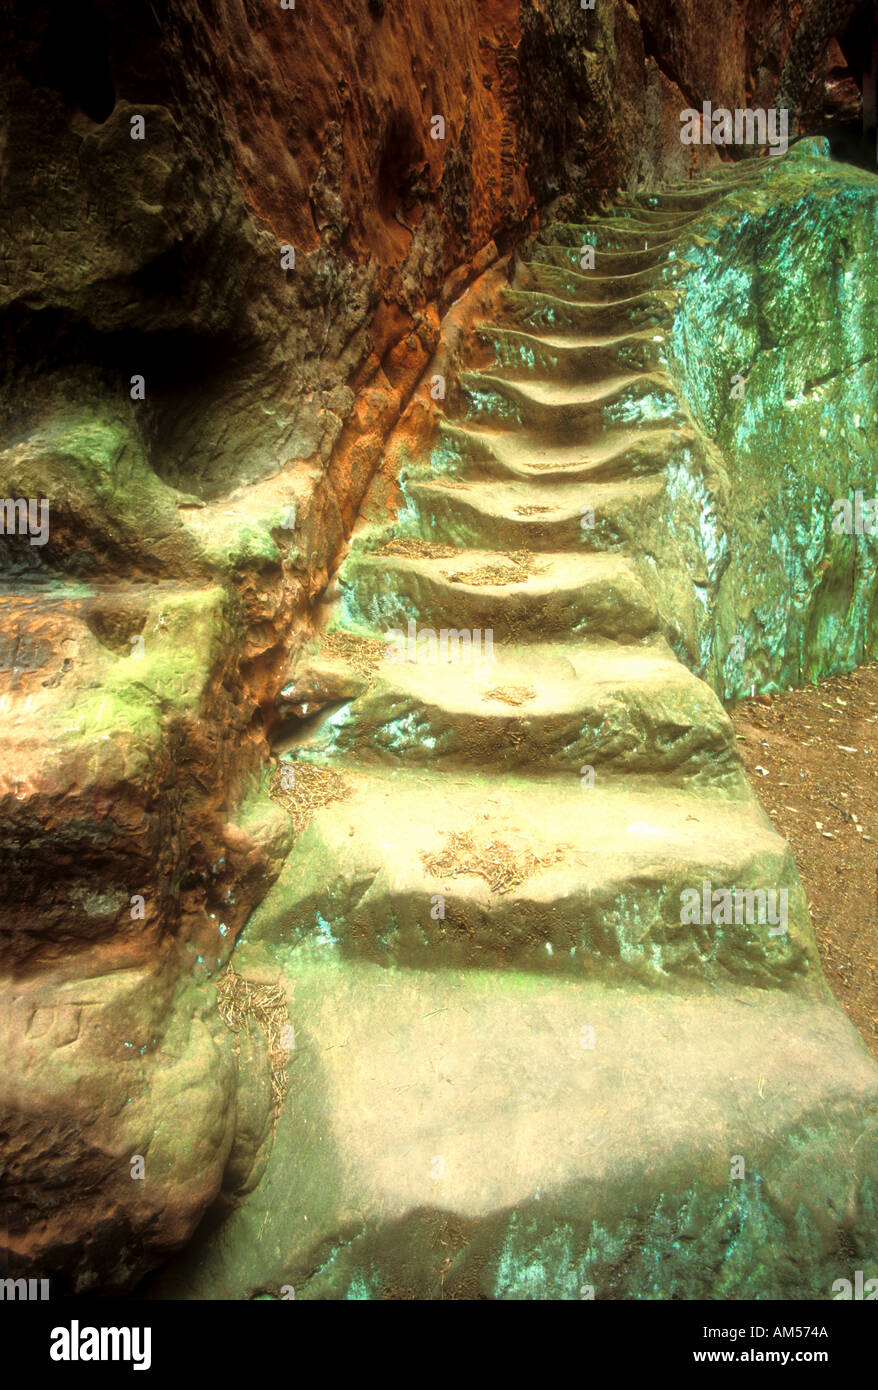 Étapes de grès anciens Kynaston Cave 379 Nesscliffe Hawkstone Park Shropshire England UK Royaume-Uni 18e siècle GO Banque D'Images